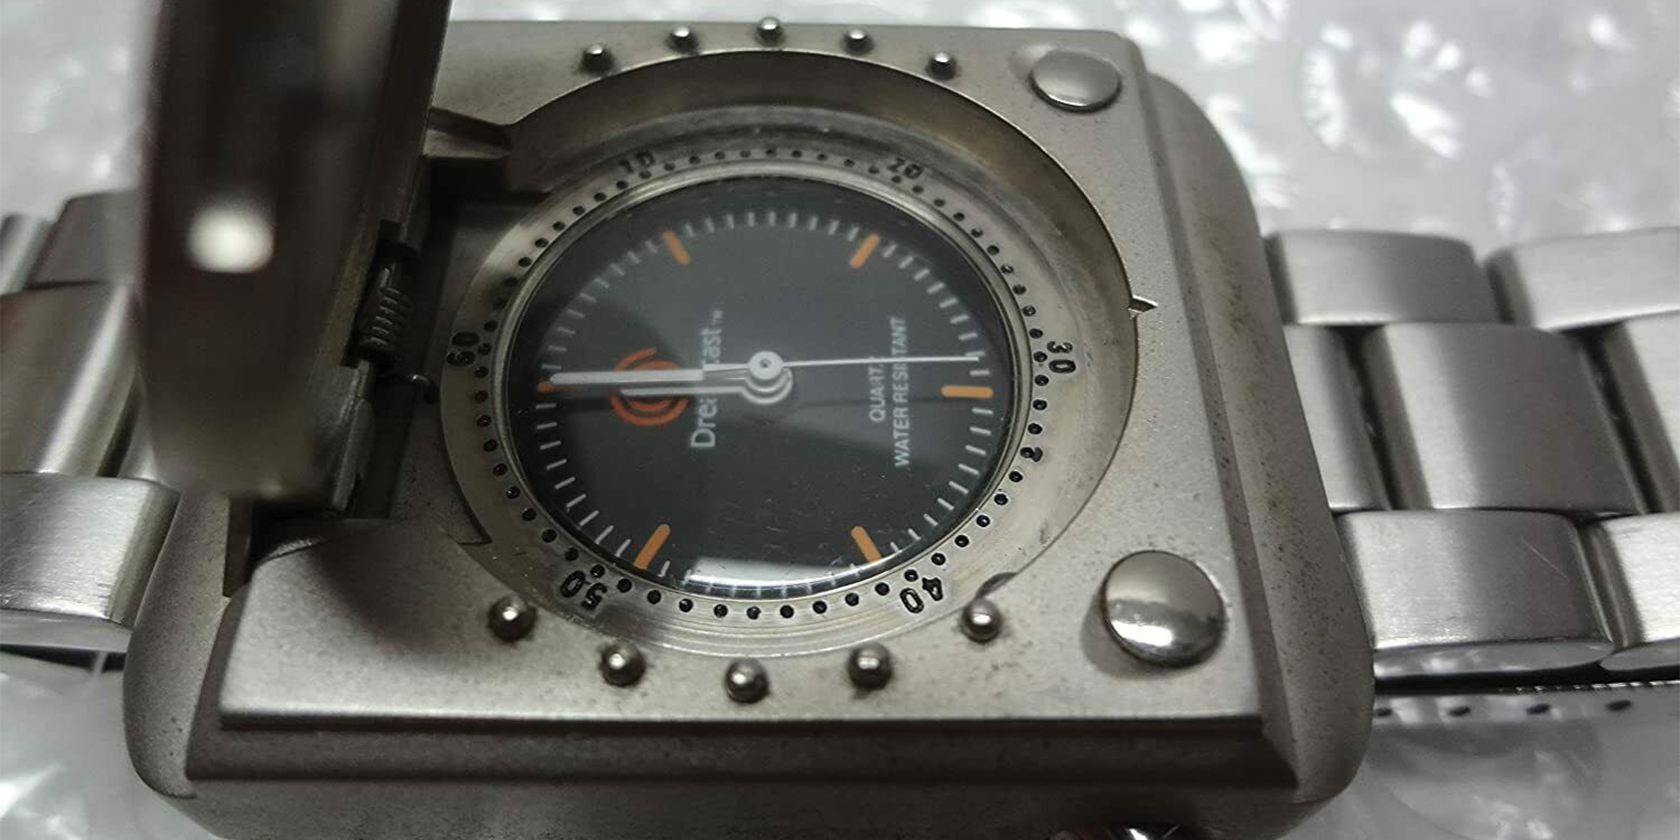 sega dreamcast wristwatch lid open - Indossereste questo orologio da polso Dreamcast?